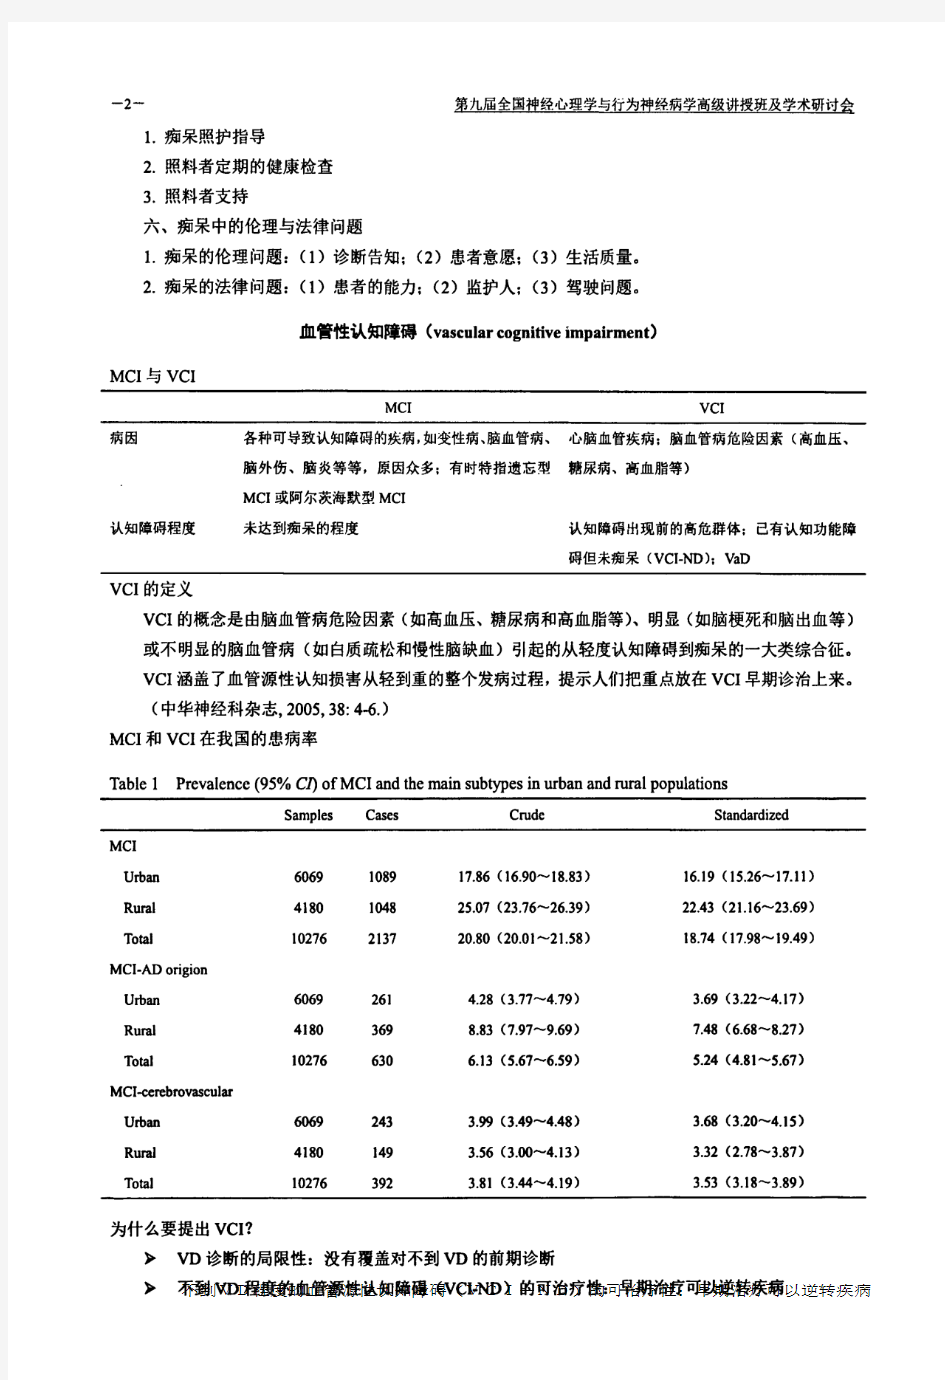 《中国痴呆与认知障碍诊治指南》——血管性认知障碍